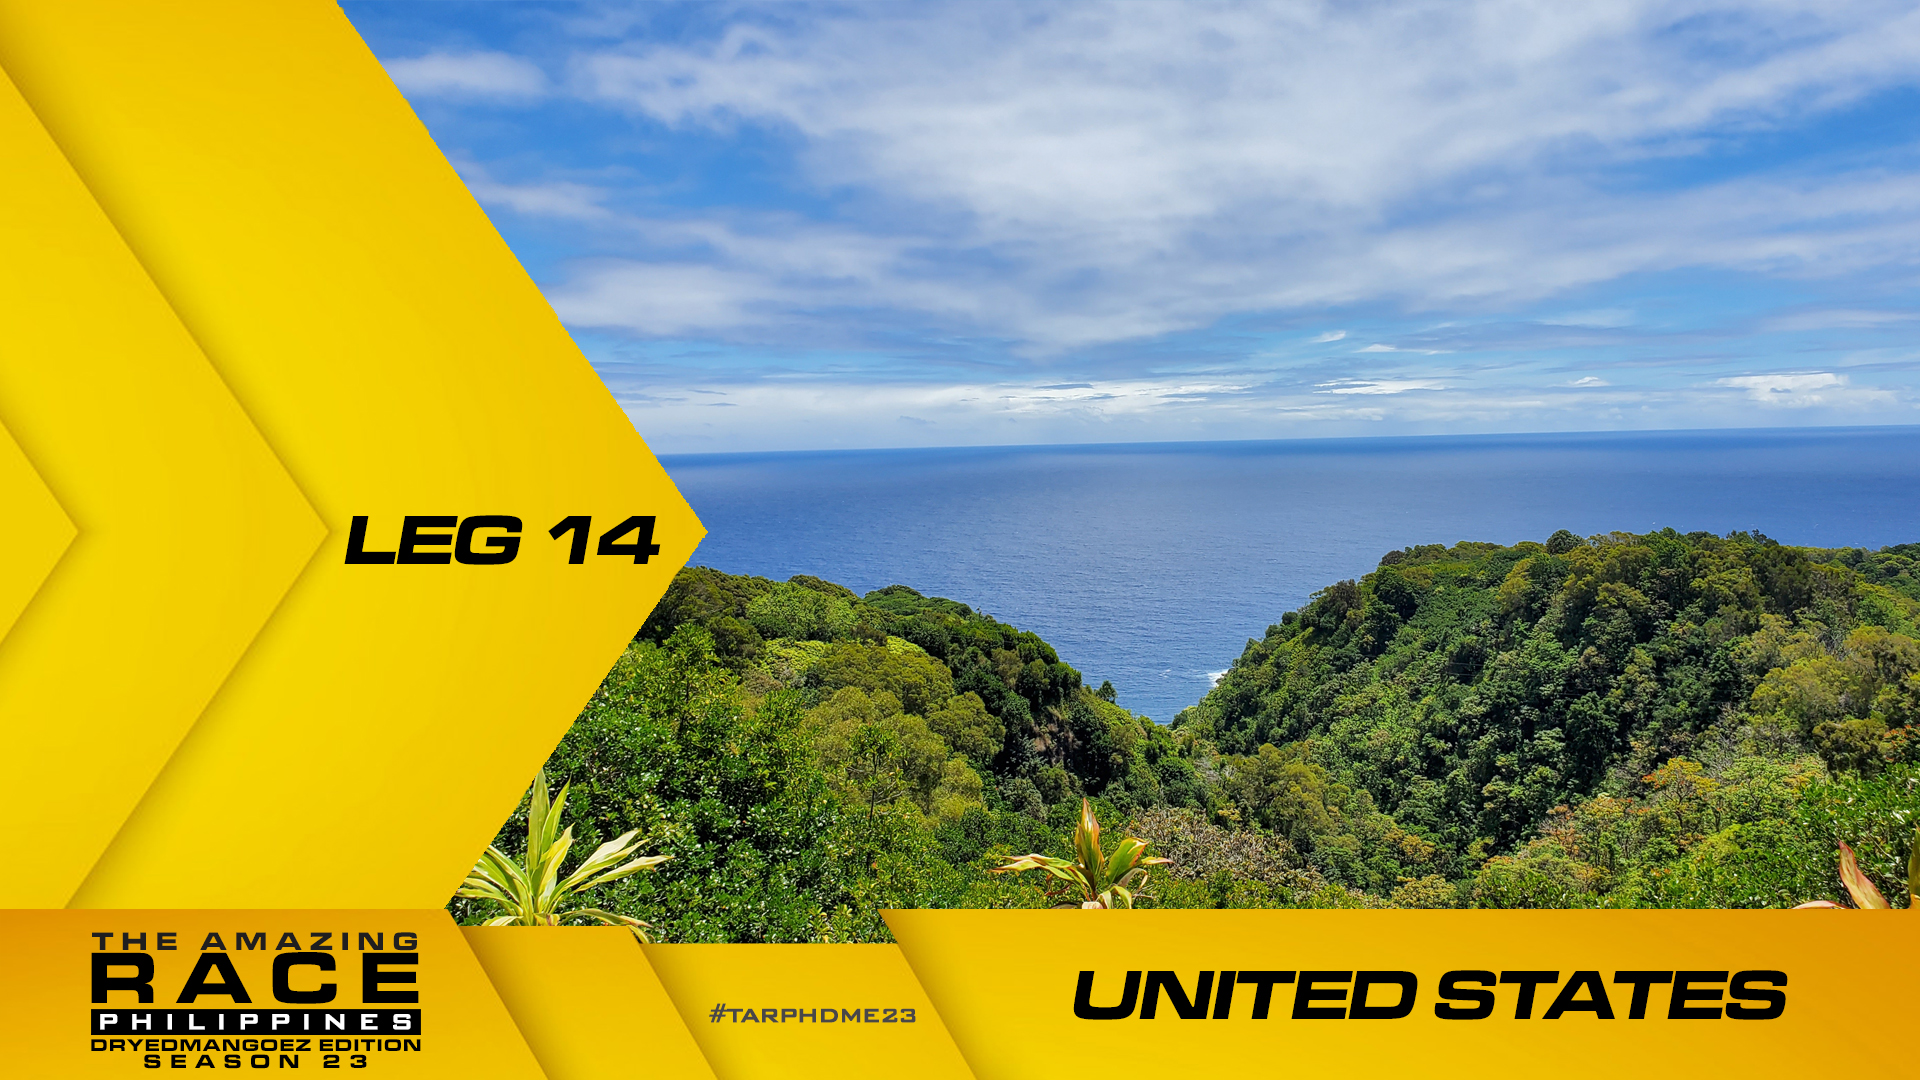 The Amazing Race Philippines: DryedMangoez Edition 23, Leg 14 – United States